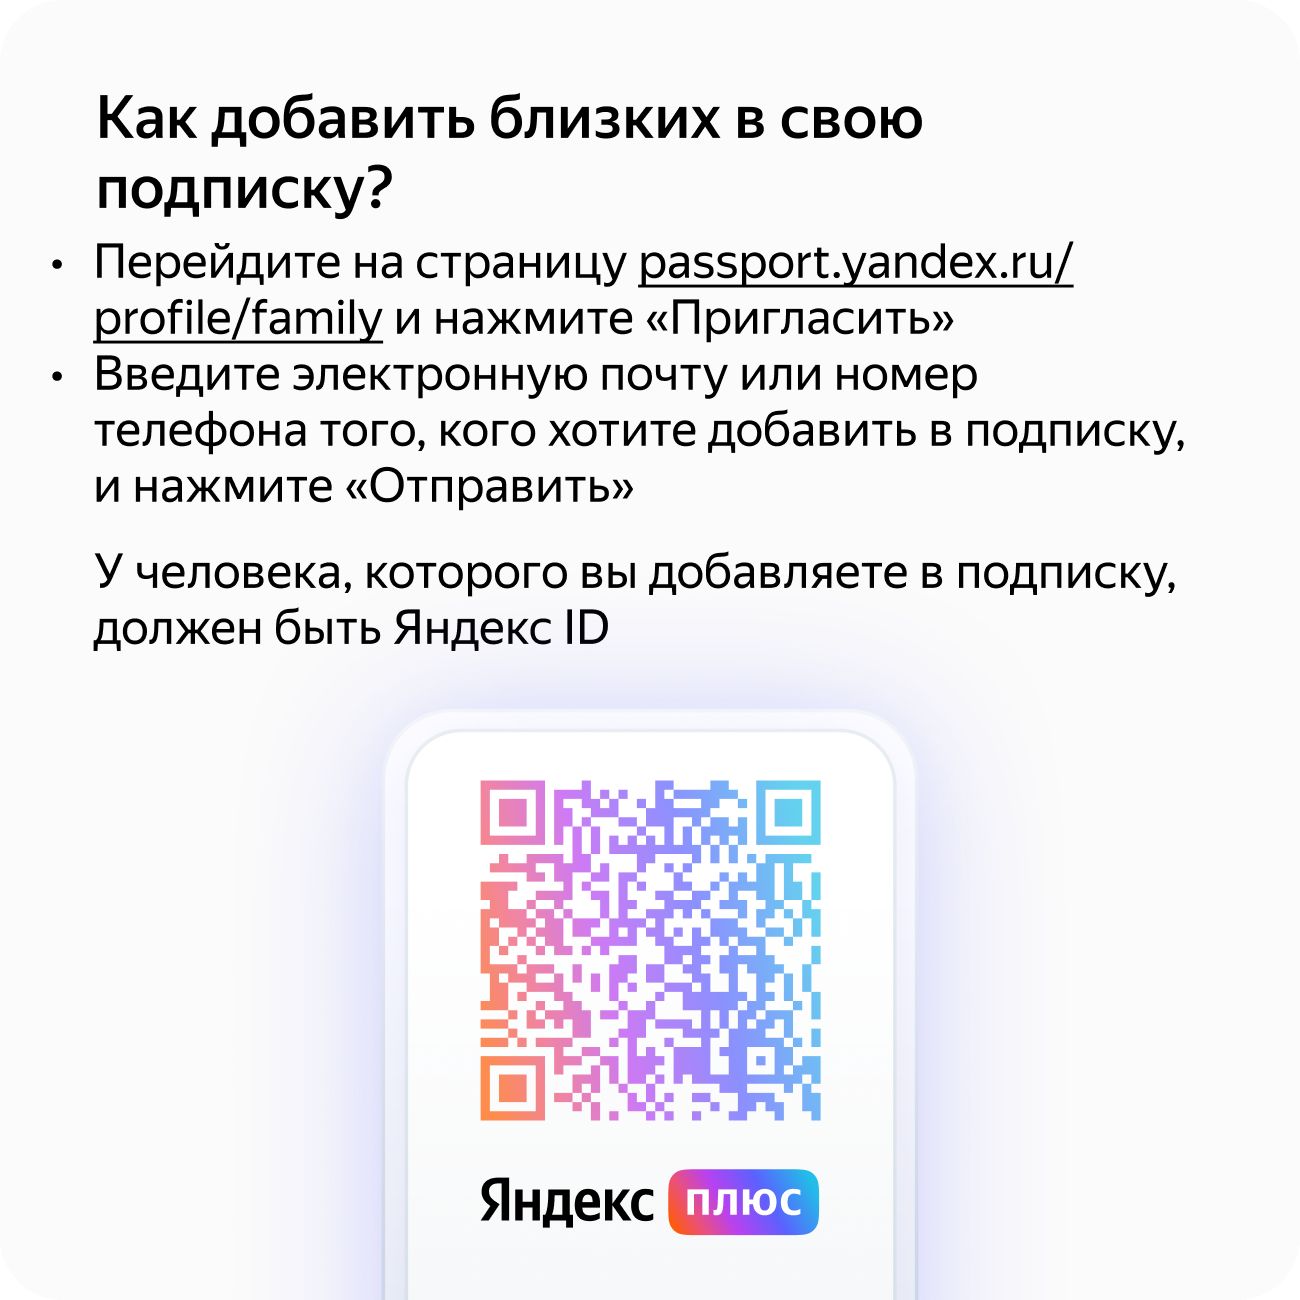 Язык поисковых запросов в Яндексе